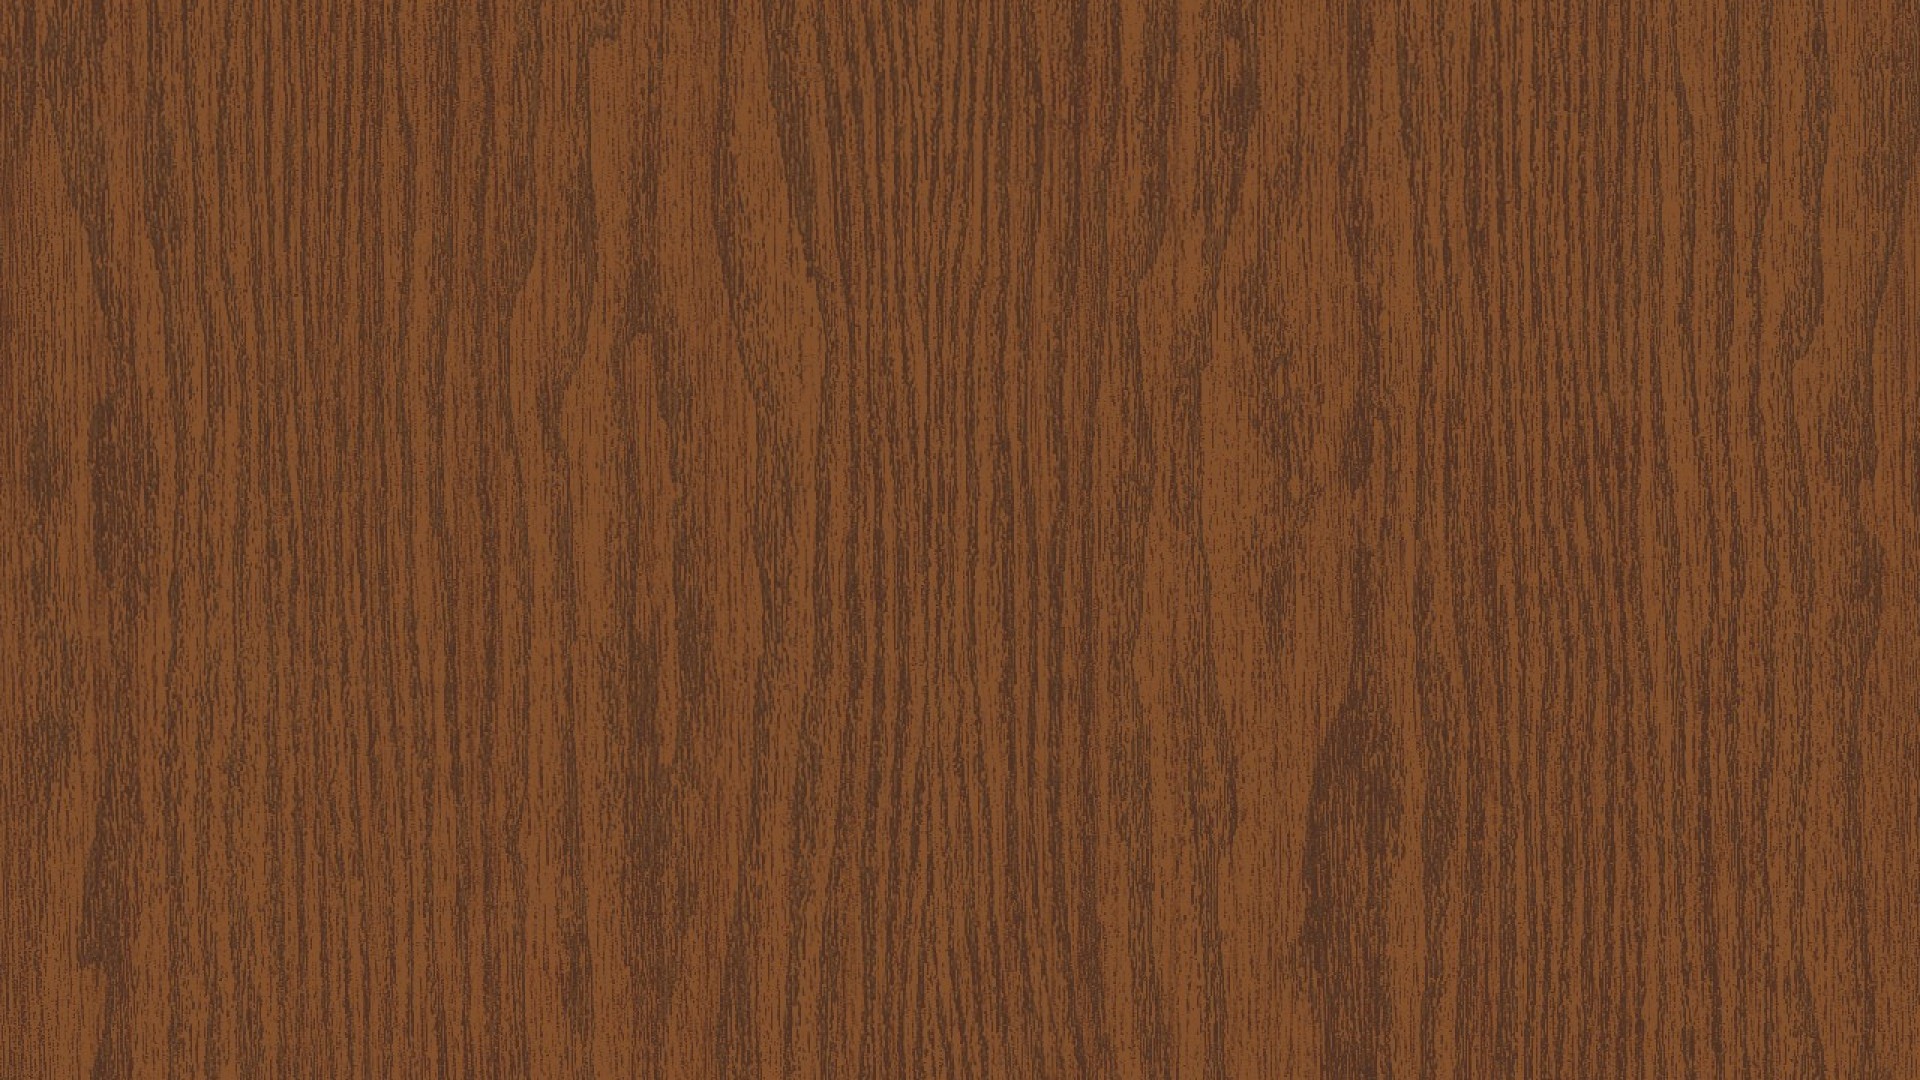 Wood Solid Oak By Hexdef101